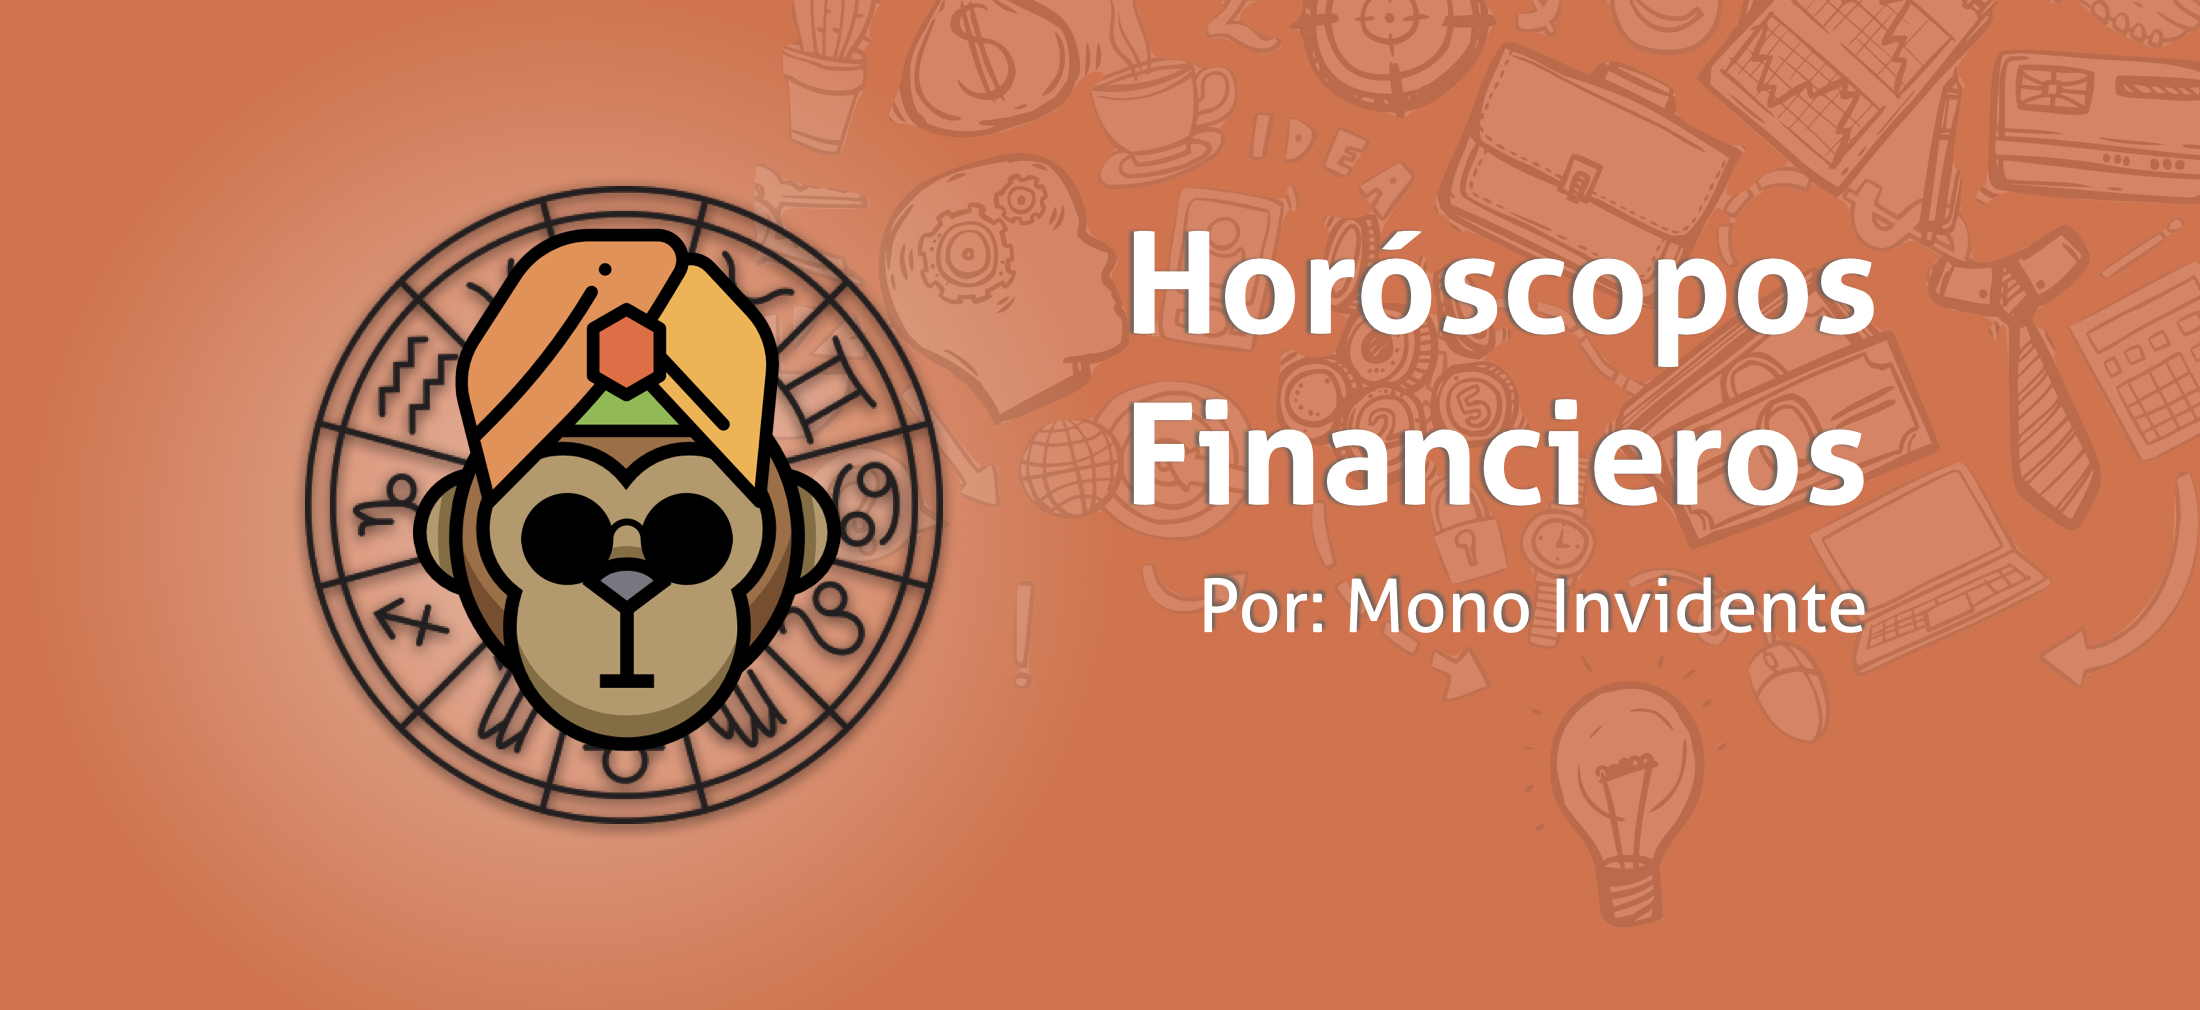 Horoscopos-financieros-signos-del-zodiaco